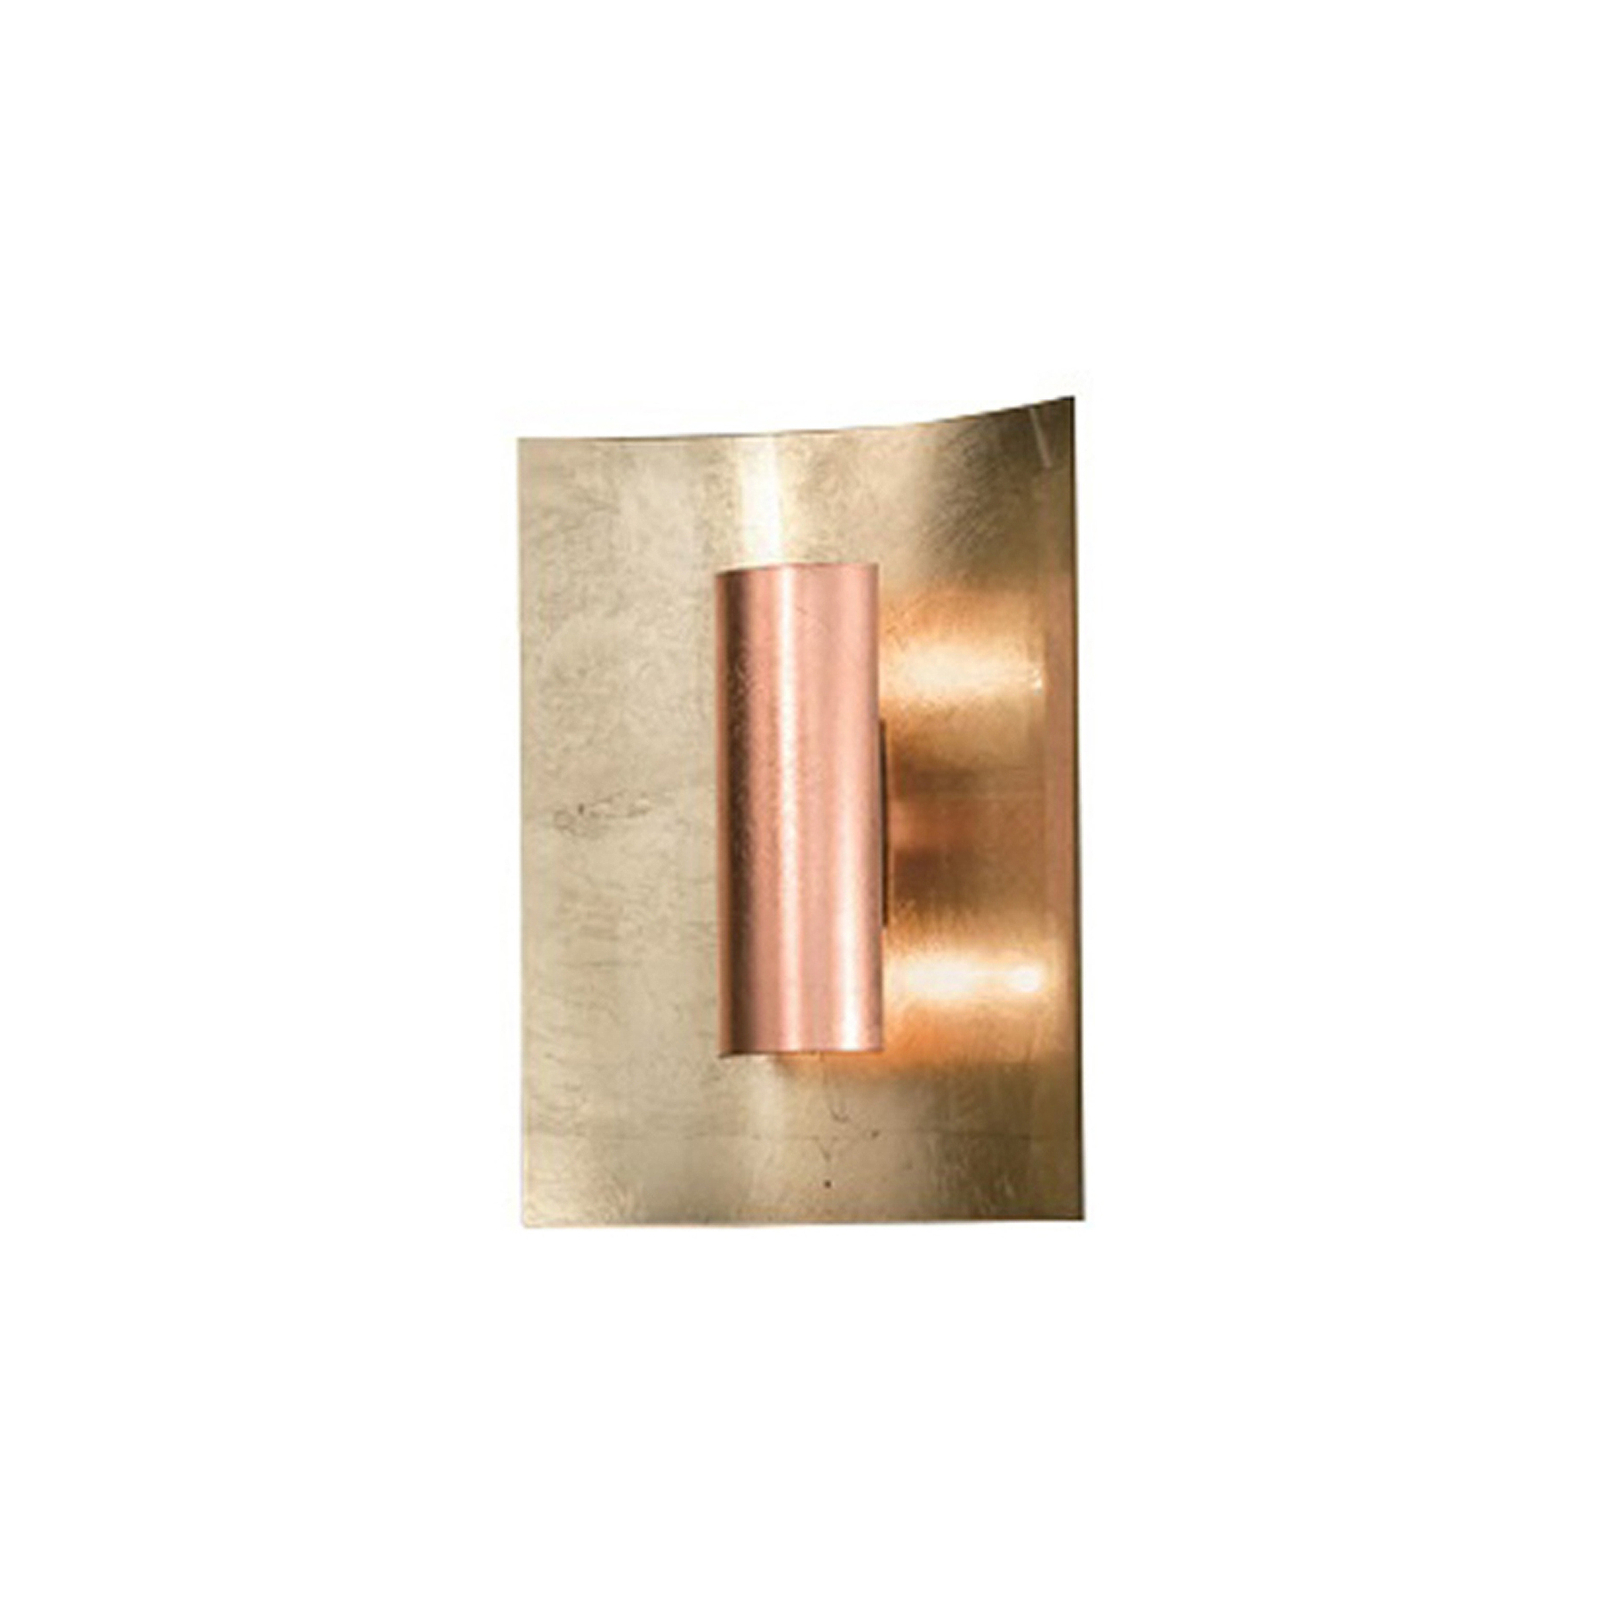 Aura Gold wall light copper shade, height 45 cm